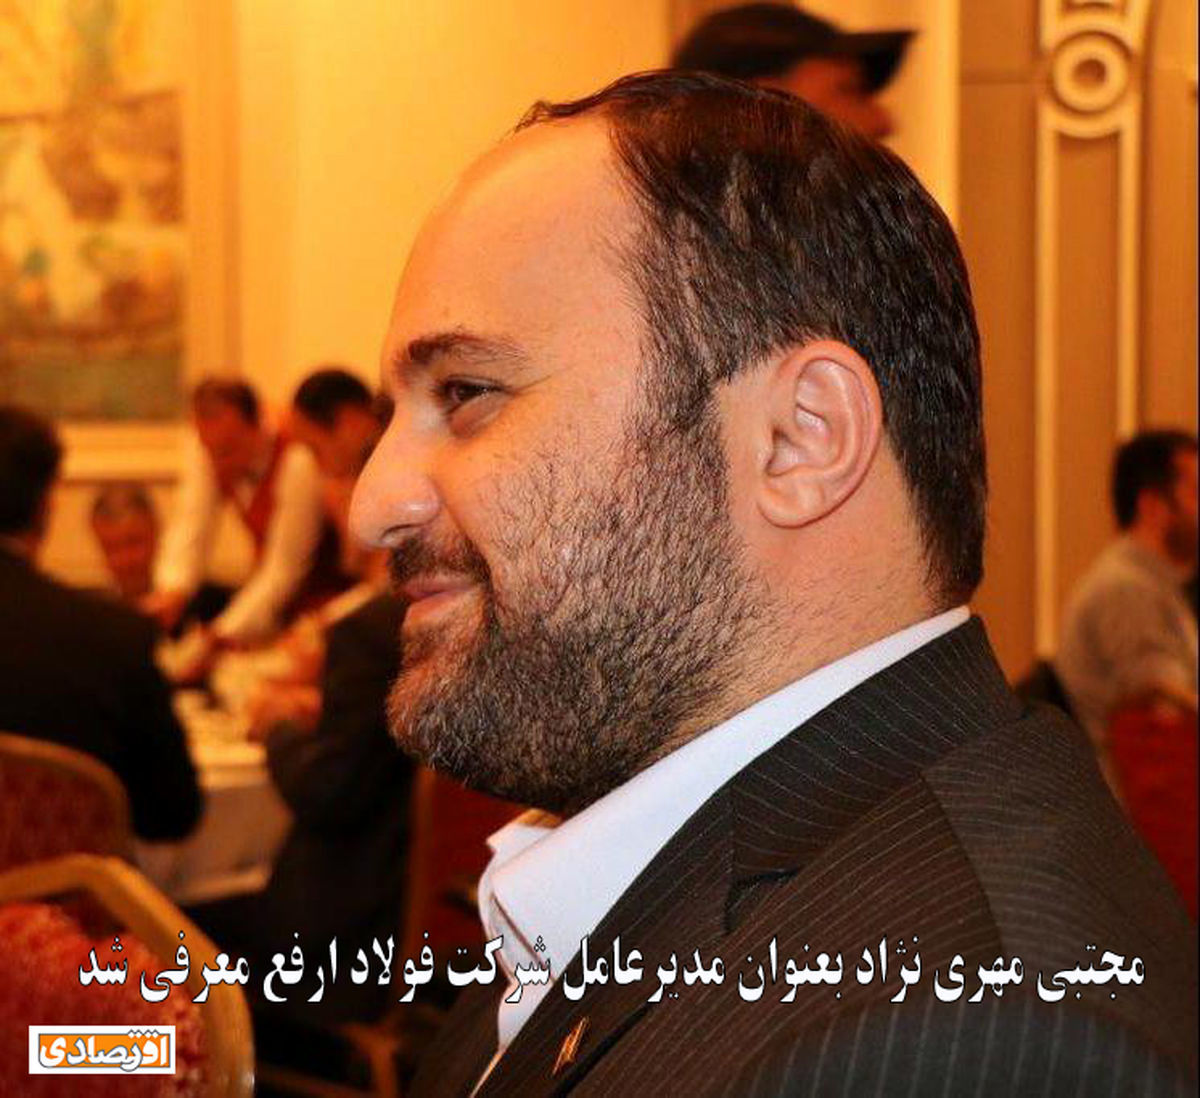 مجتبی مهری نژاد مدیرعامل جدید شرکت آهن و فولاد ارفع شد